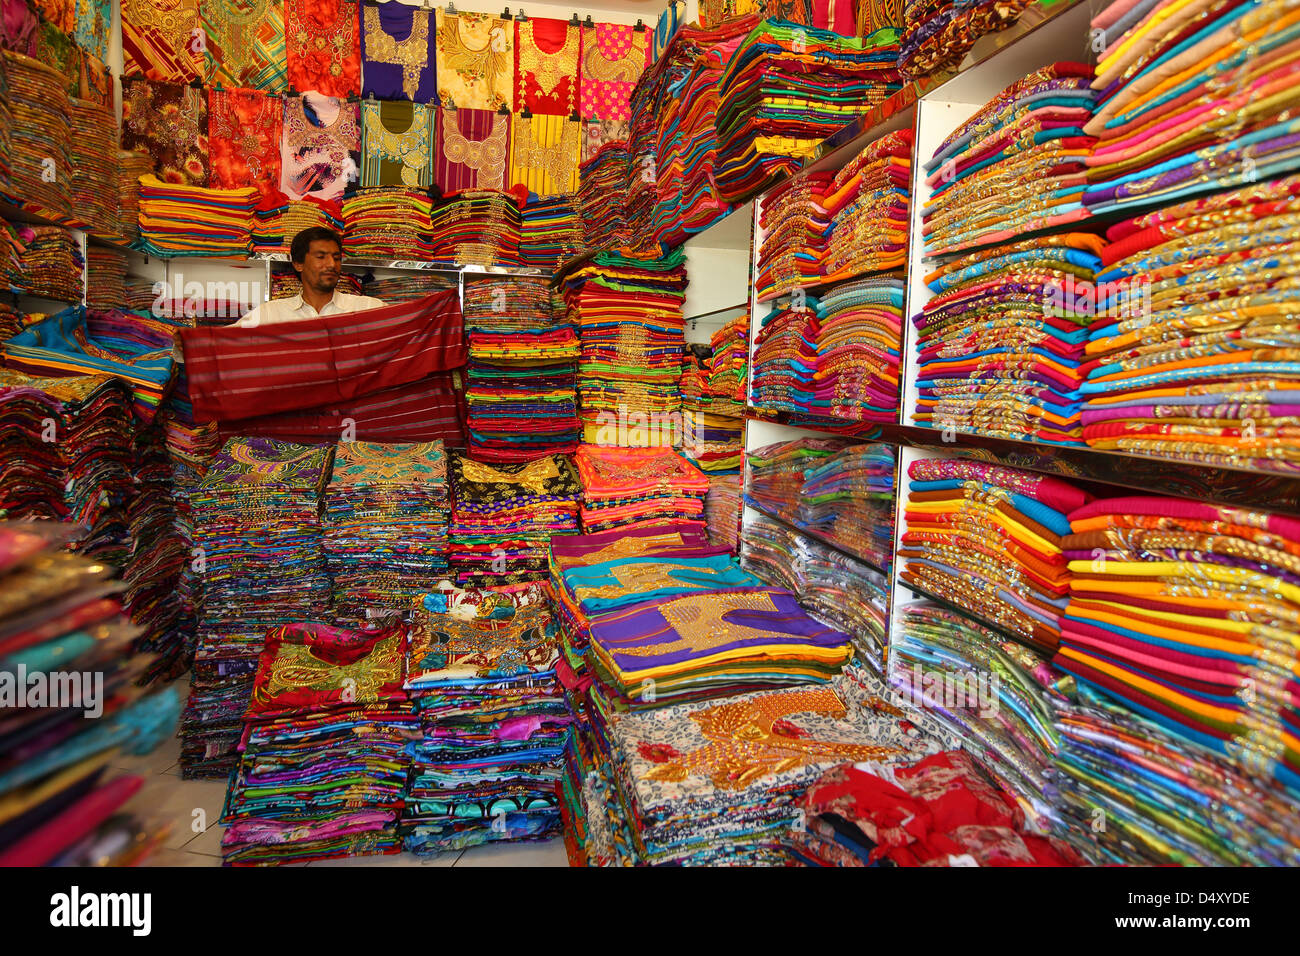 L'homme en tissu pliable boutique textile, Dubaï, Émirats Arabes Unis Banque D'Images